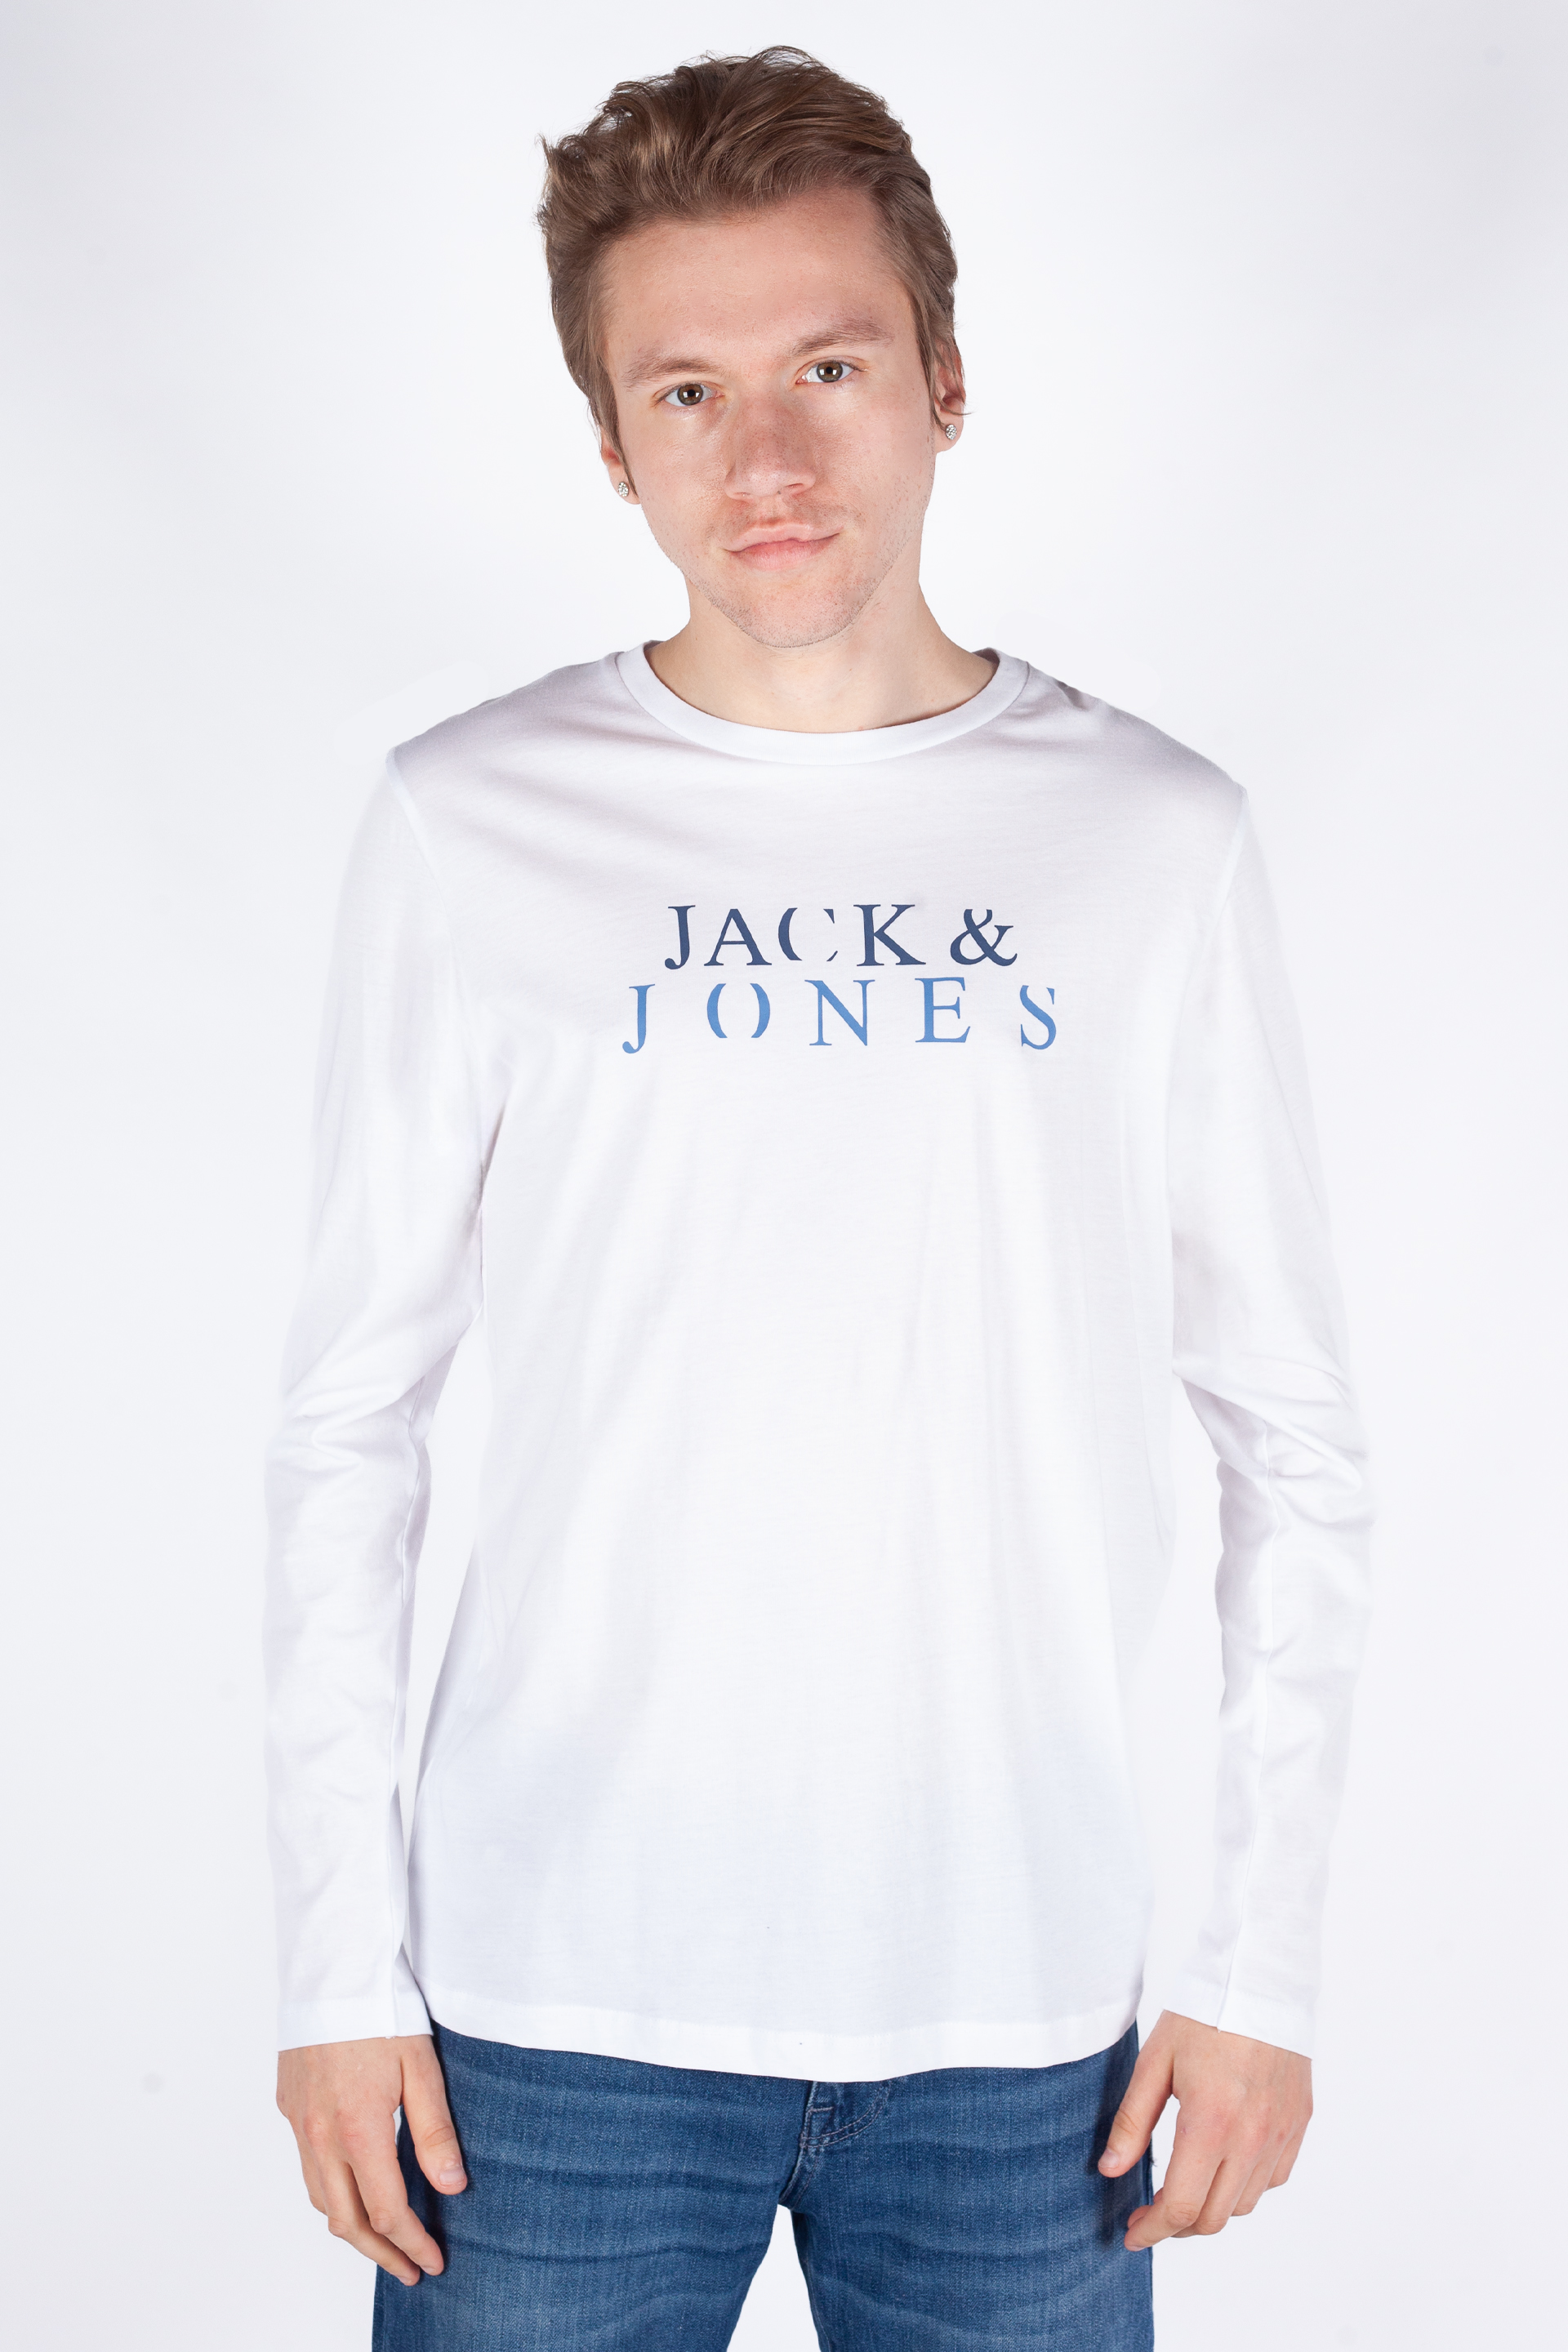 Pikkade käistega T-särgid  JACK & JONES 12244403-White